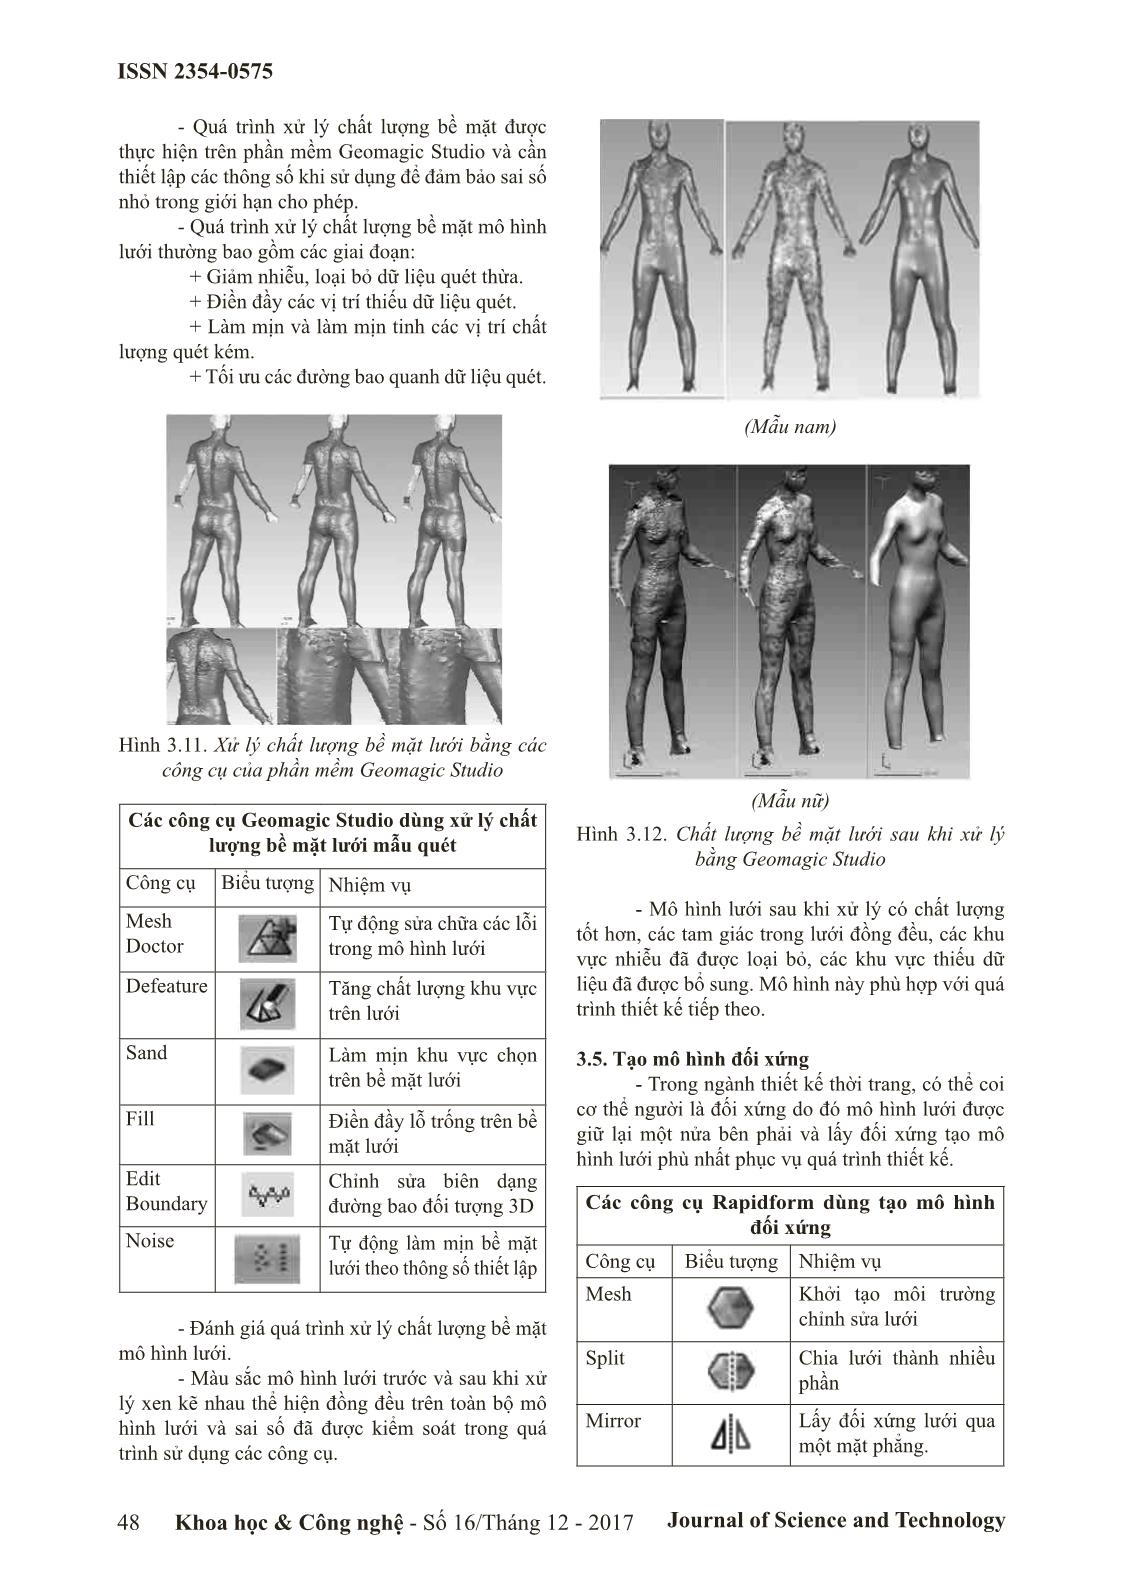 Xử lý dữ liệu quét mẫu cơ thể người phục vụ thiết kế quân áo 3 chiều trang 6